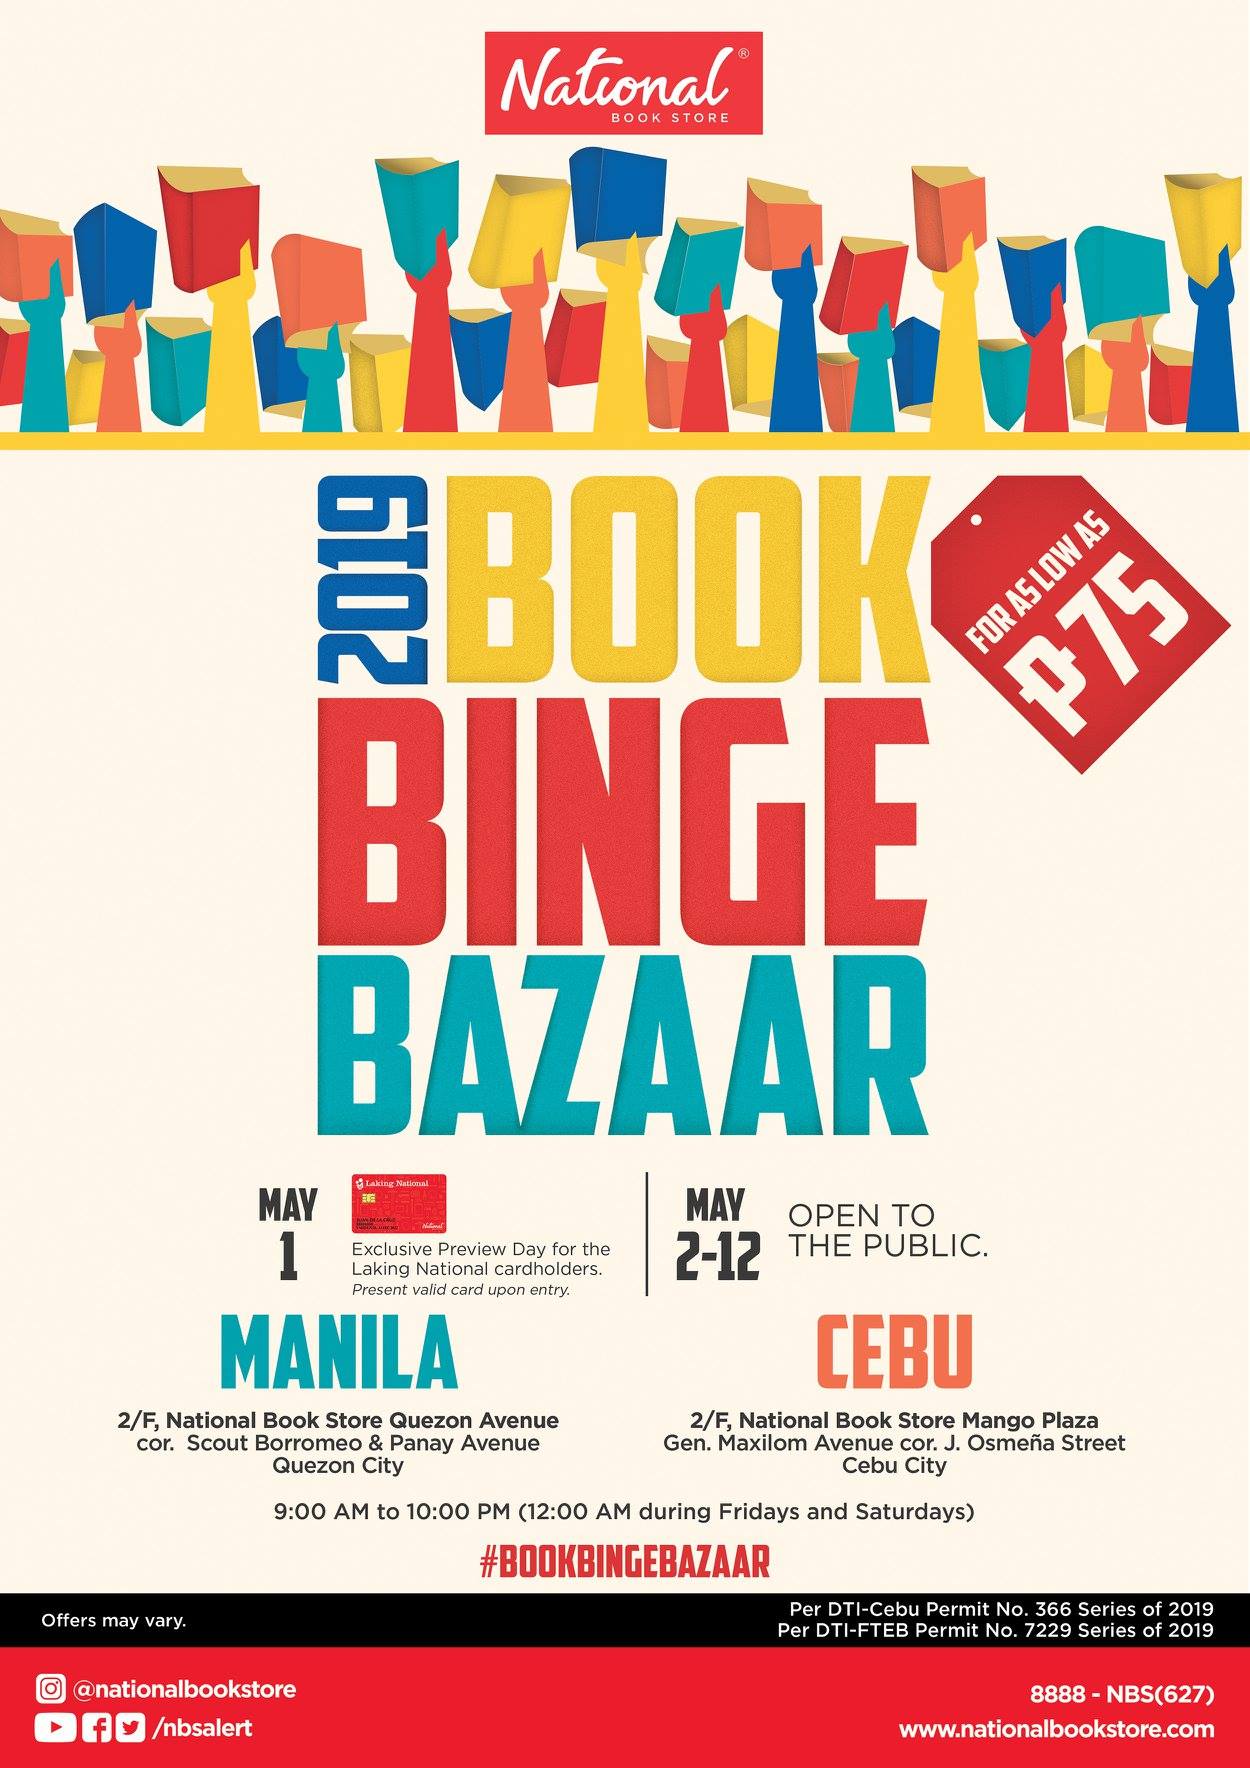 National Book Store's Book Binge Bazaar 2019